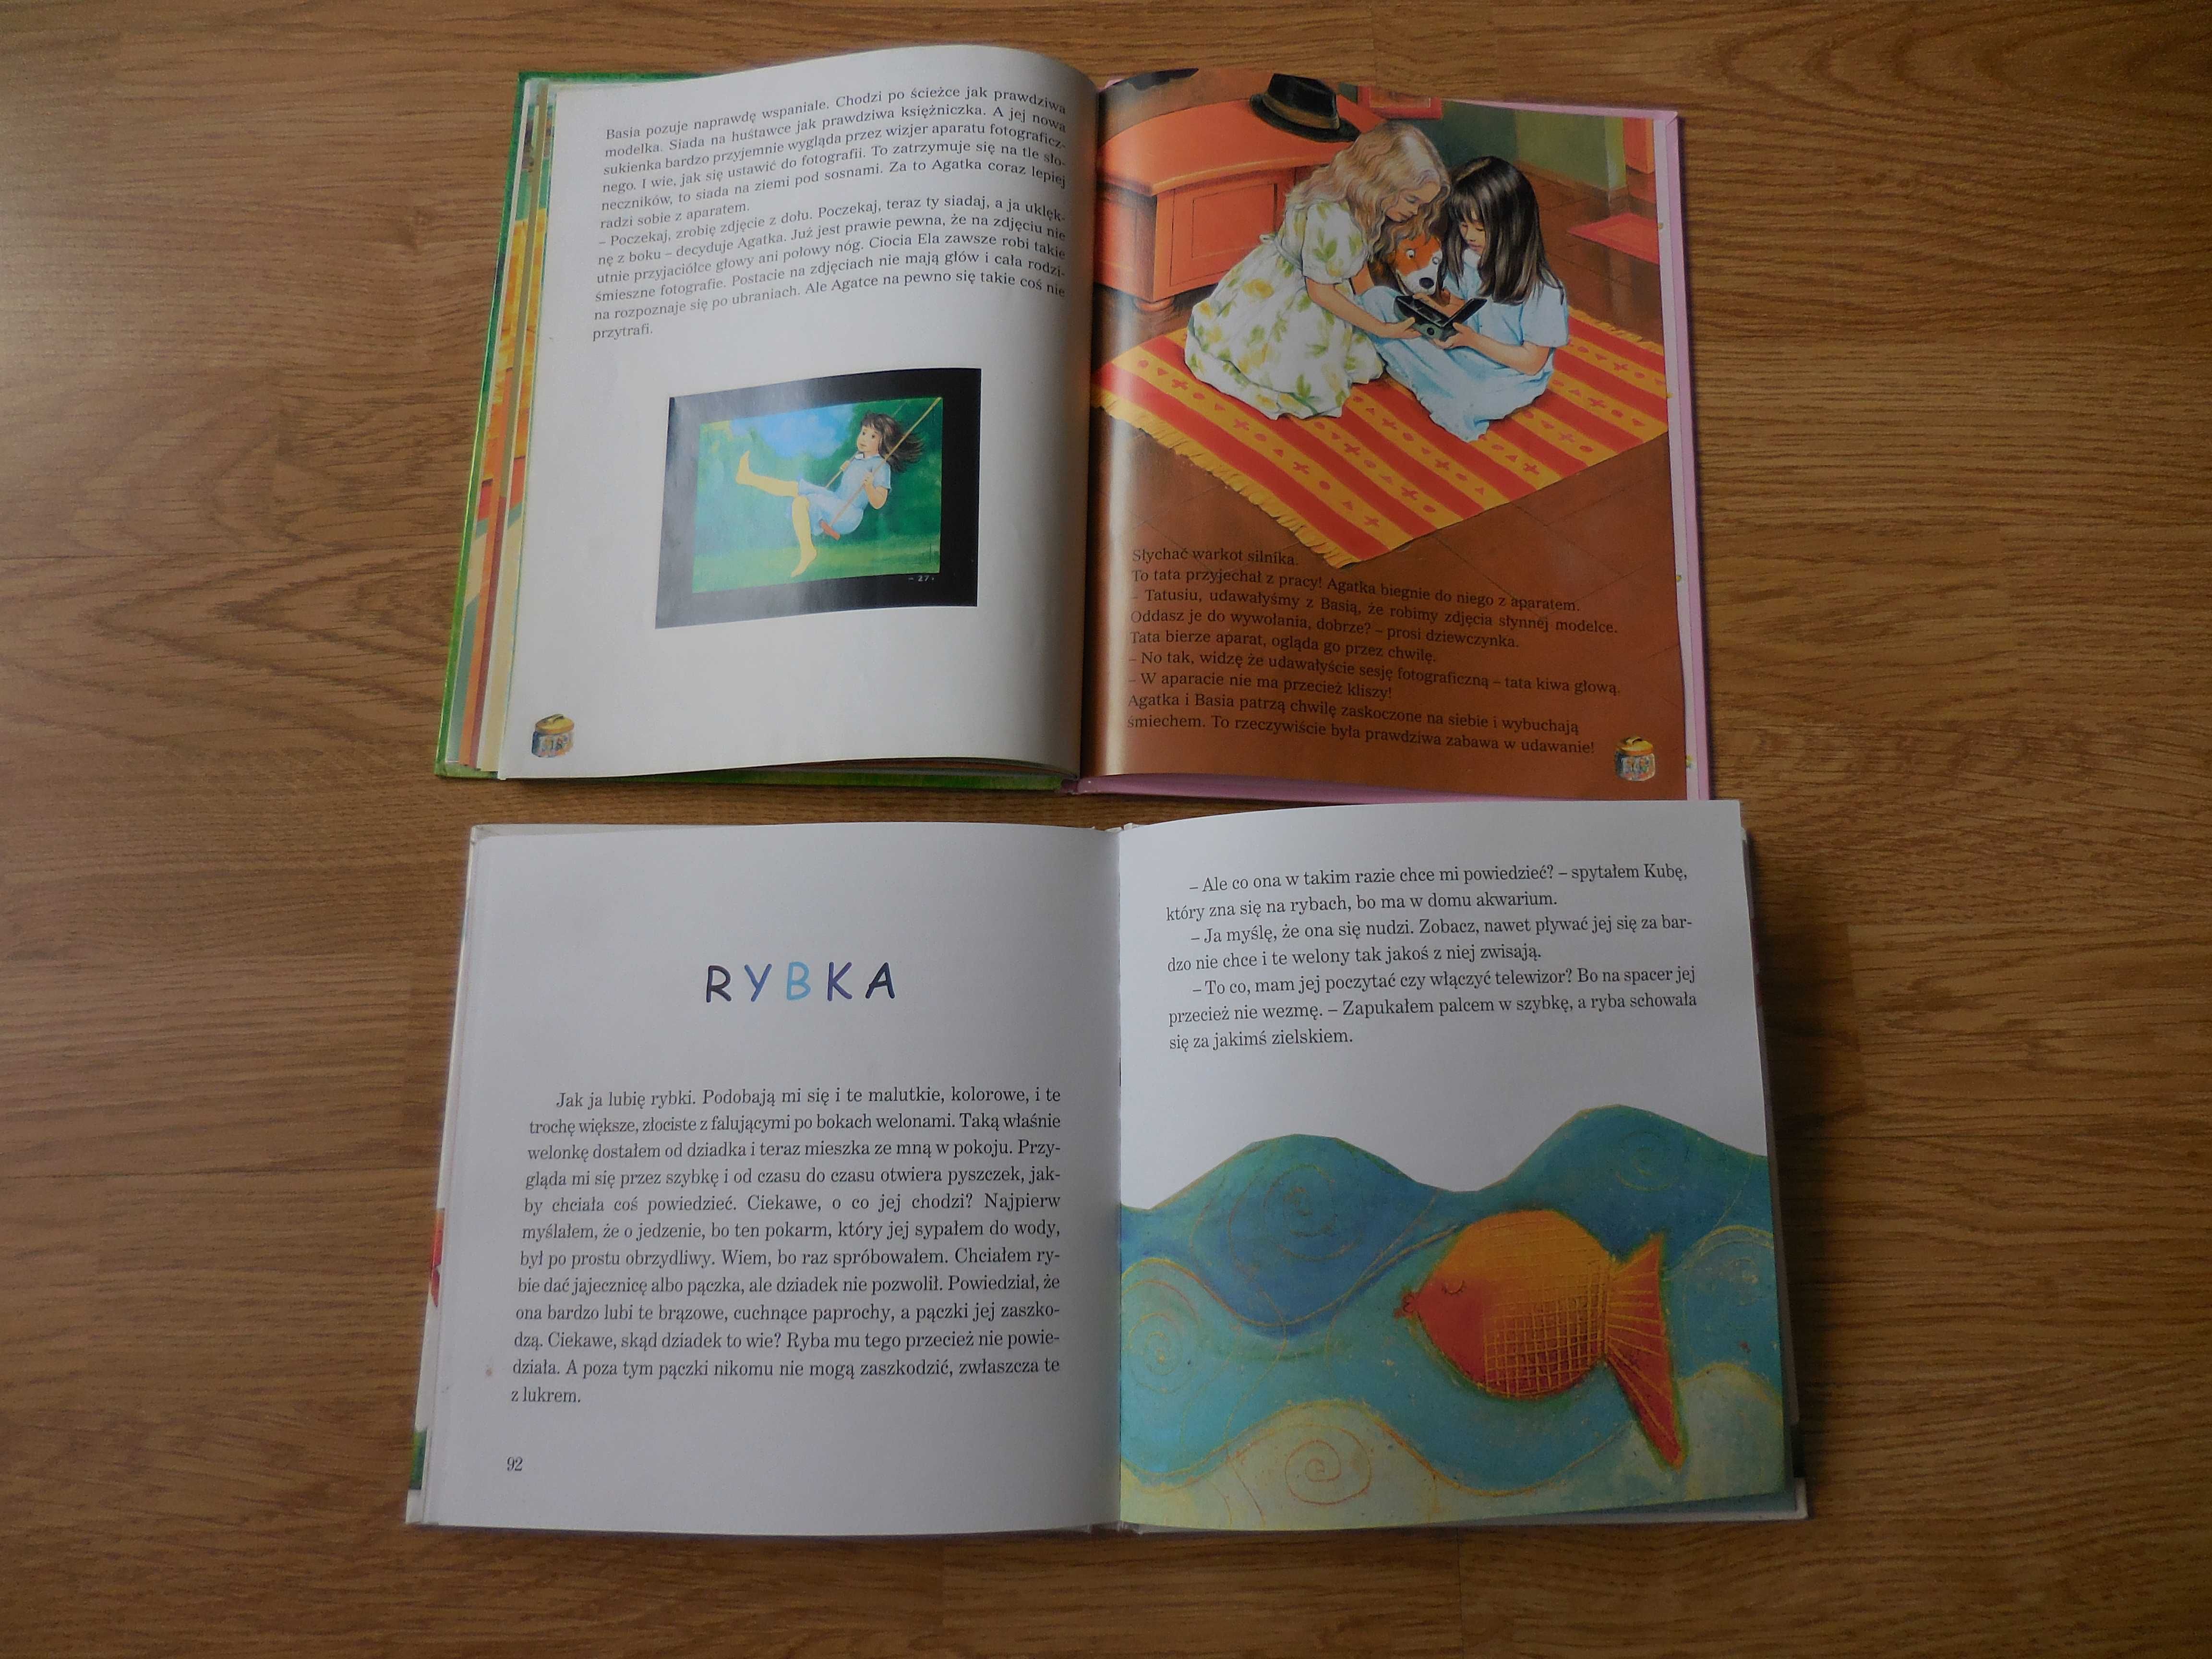 2 książki dla dzieci- Agatka - Piegowate opowiadania